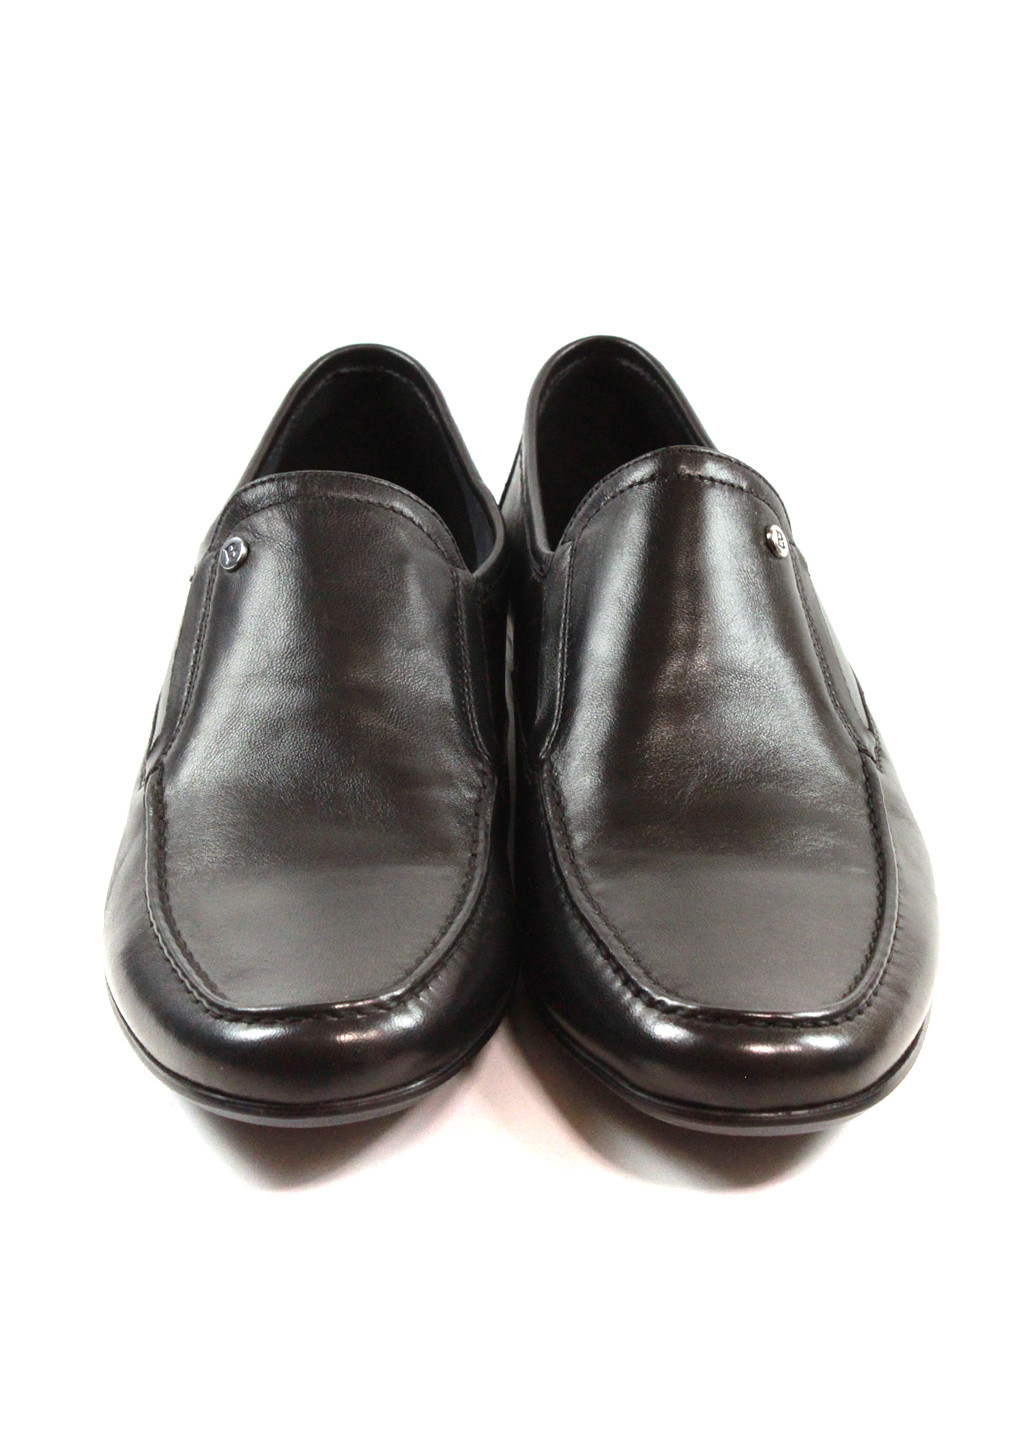 Черные кэжуал туфли Basconi на резинке